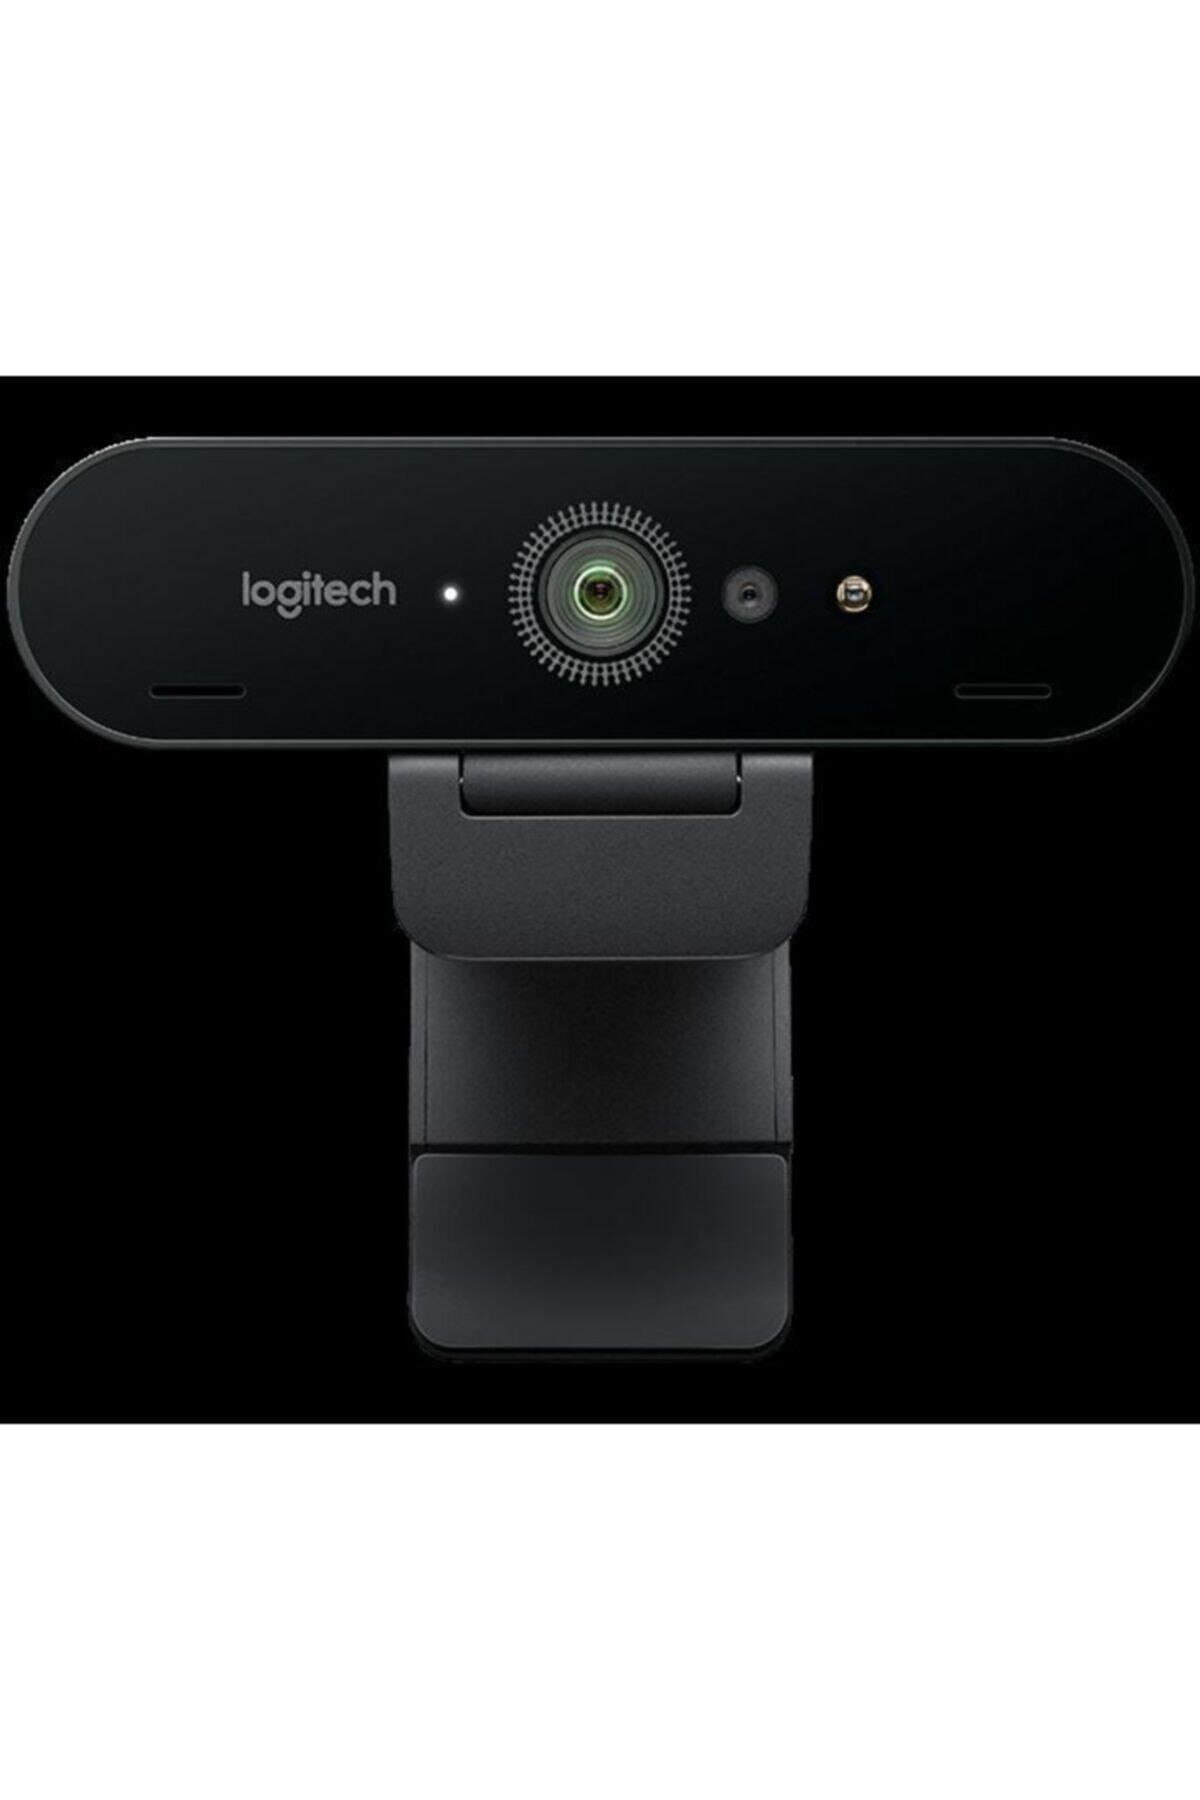 logitech 960-001194 Brio 4k Stream Edition Webcam